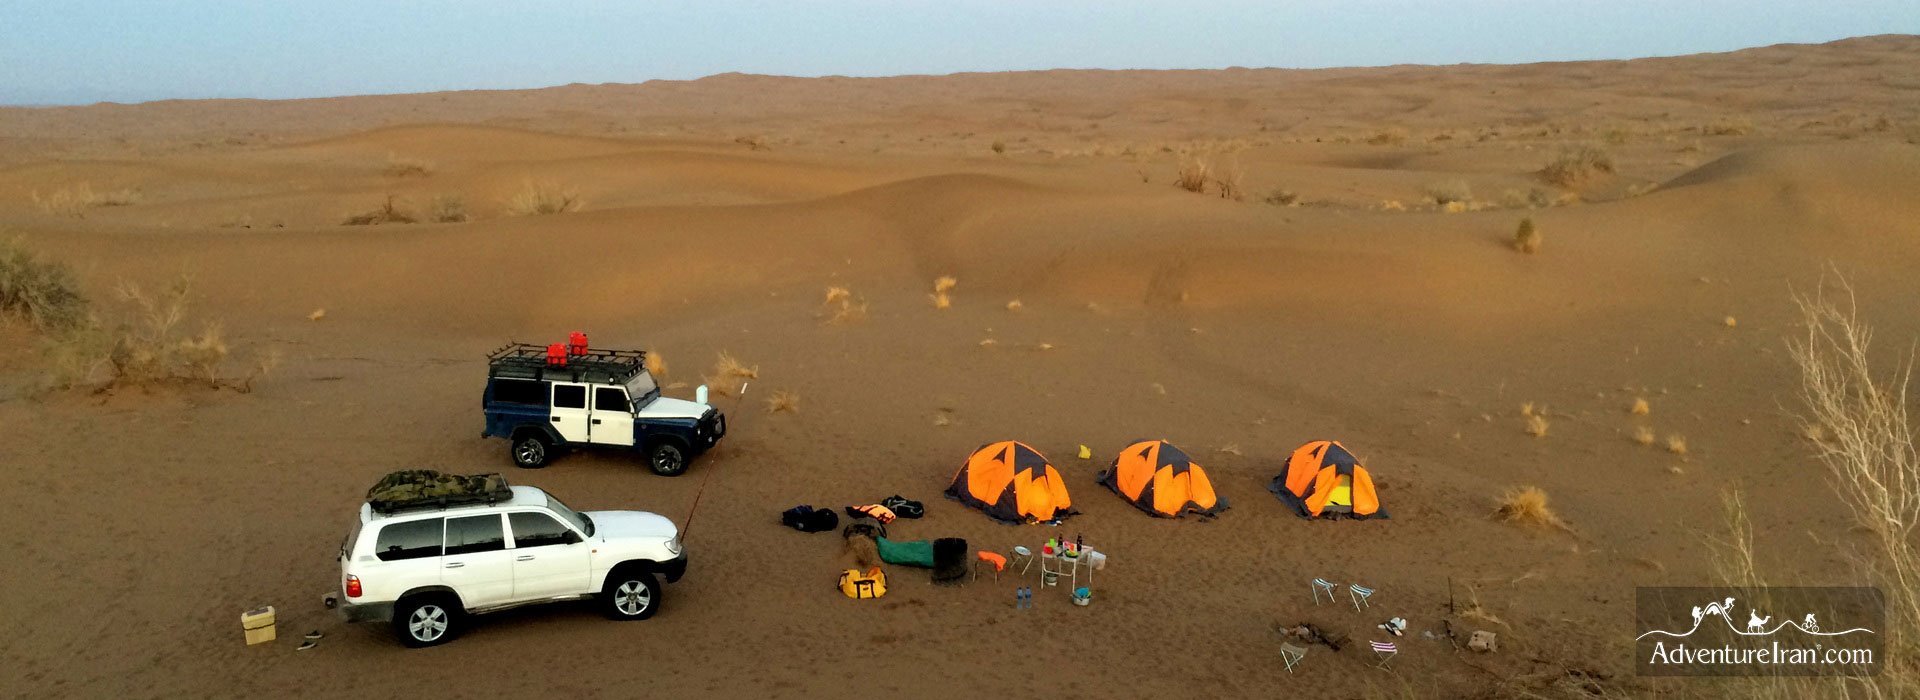 3 days 4×4 desert safari in Dashte- Kavir, Iran Central Desert